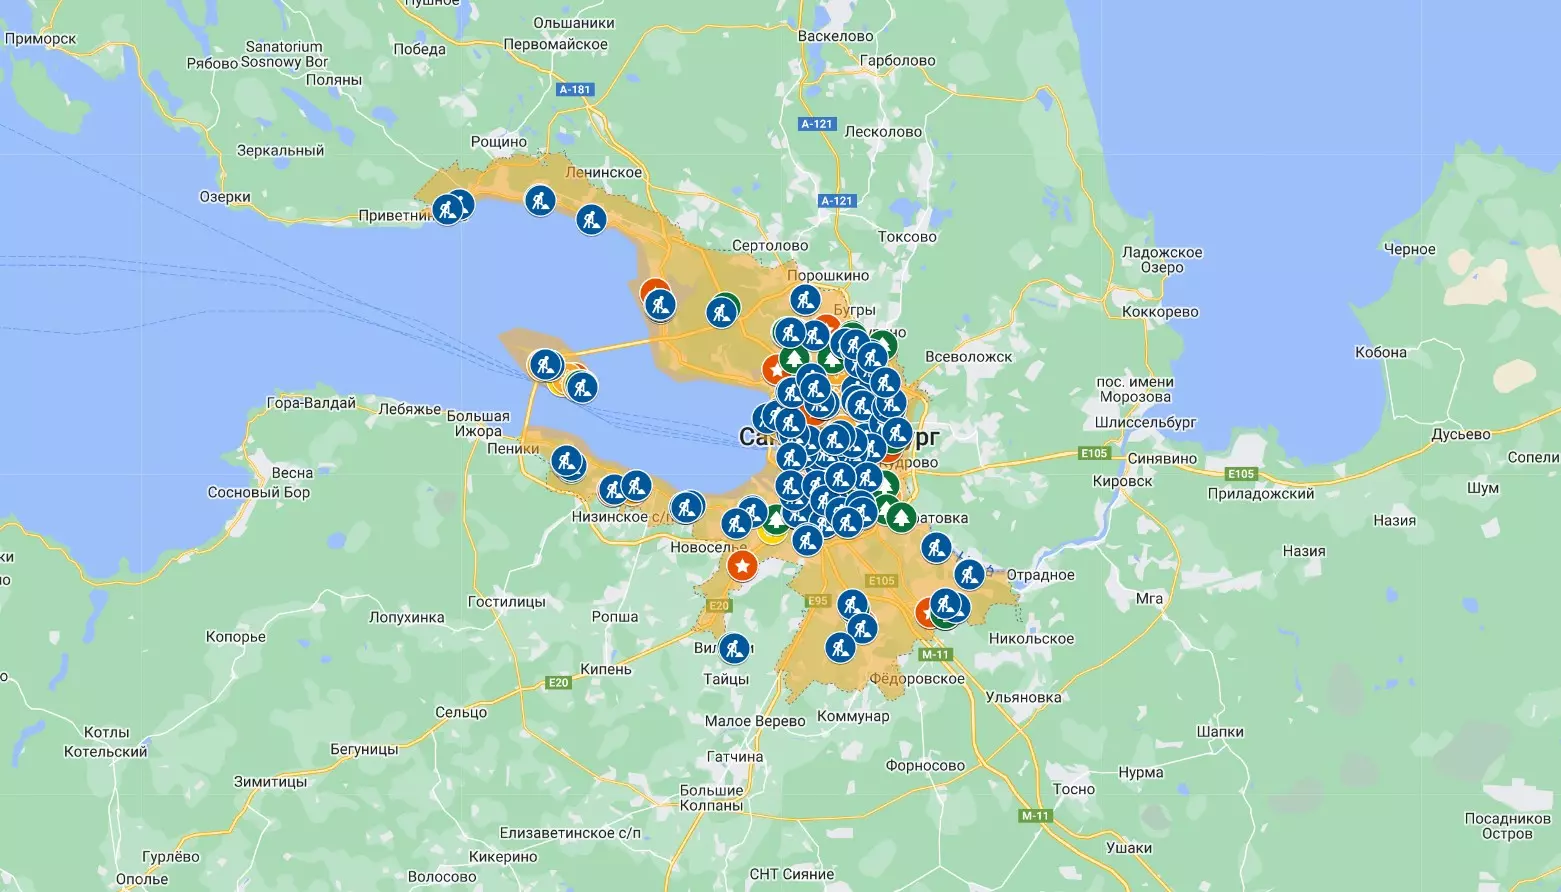 Новая интерактивная карта субботника появилась в Санкт-Петербурге 